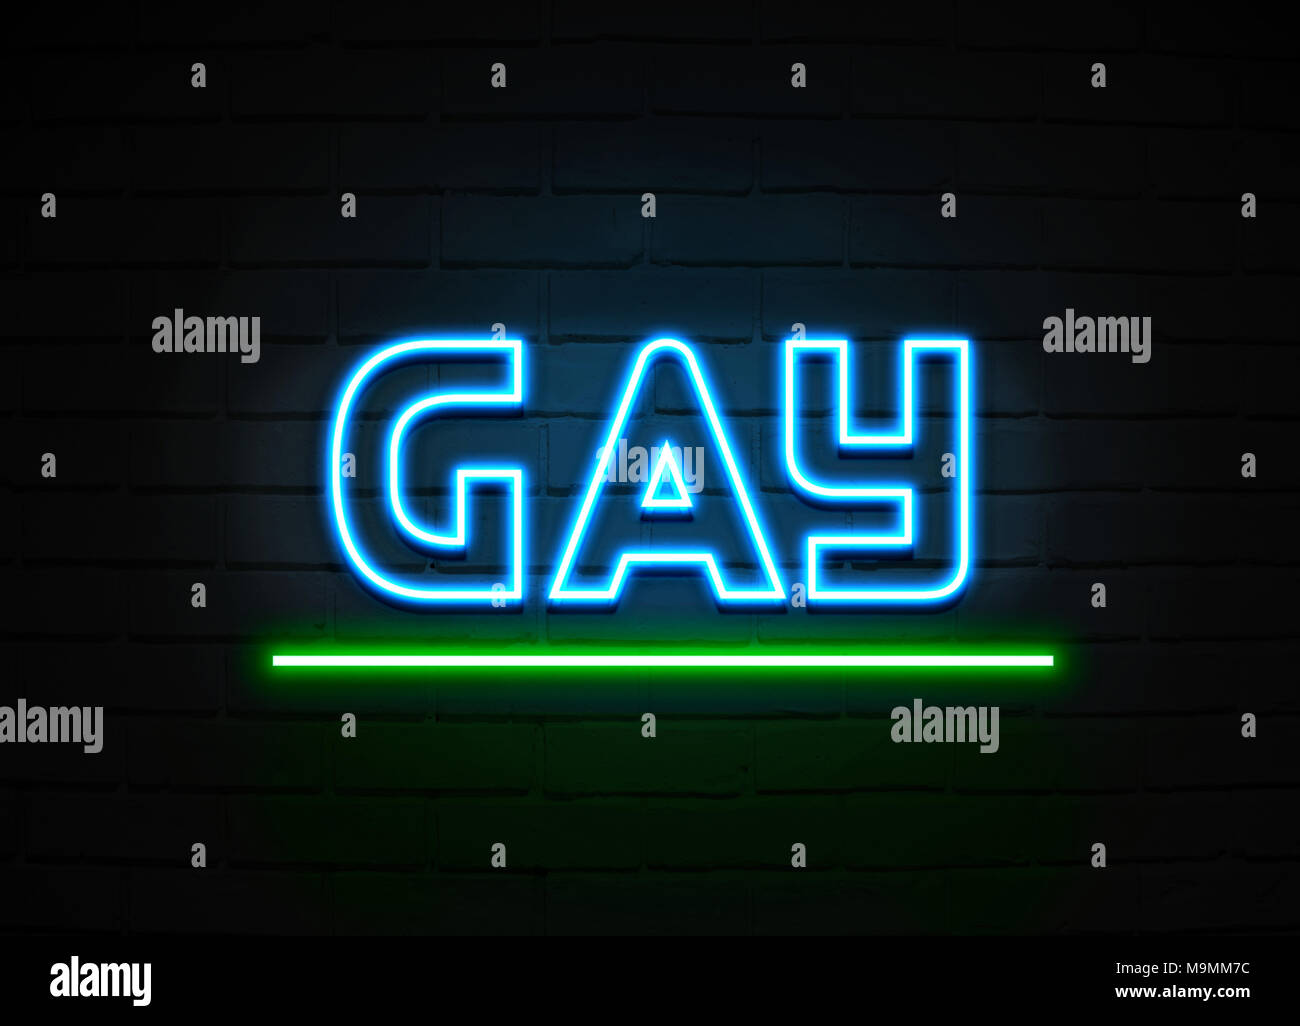 Gay Leuchtreklame - glühende Leuchtreklame auf brickwall Wand - 3D-Royalty Free Stock Illustration dargestellt. Stockfoto